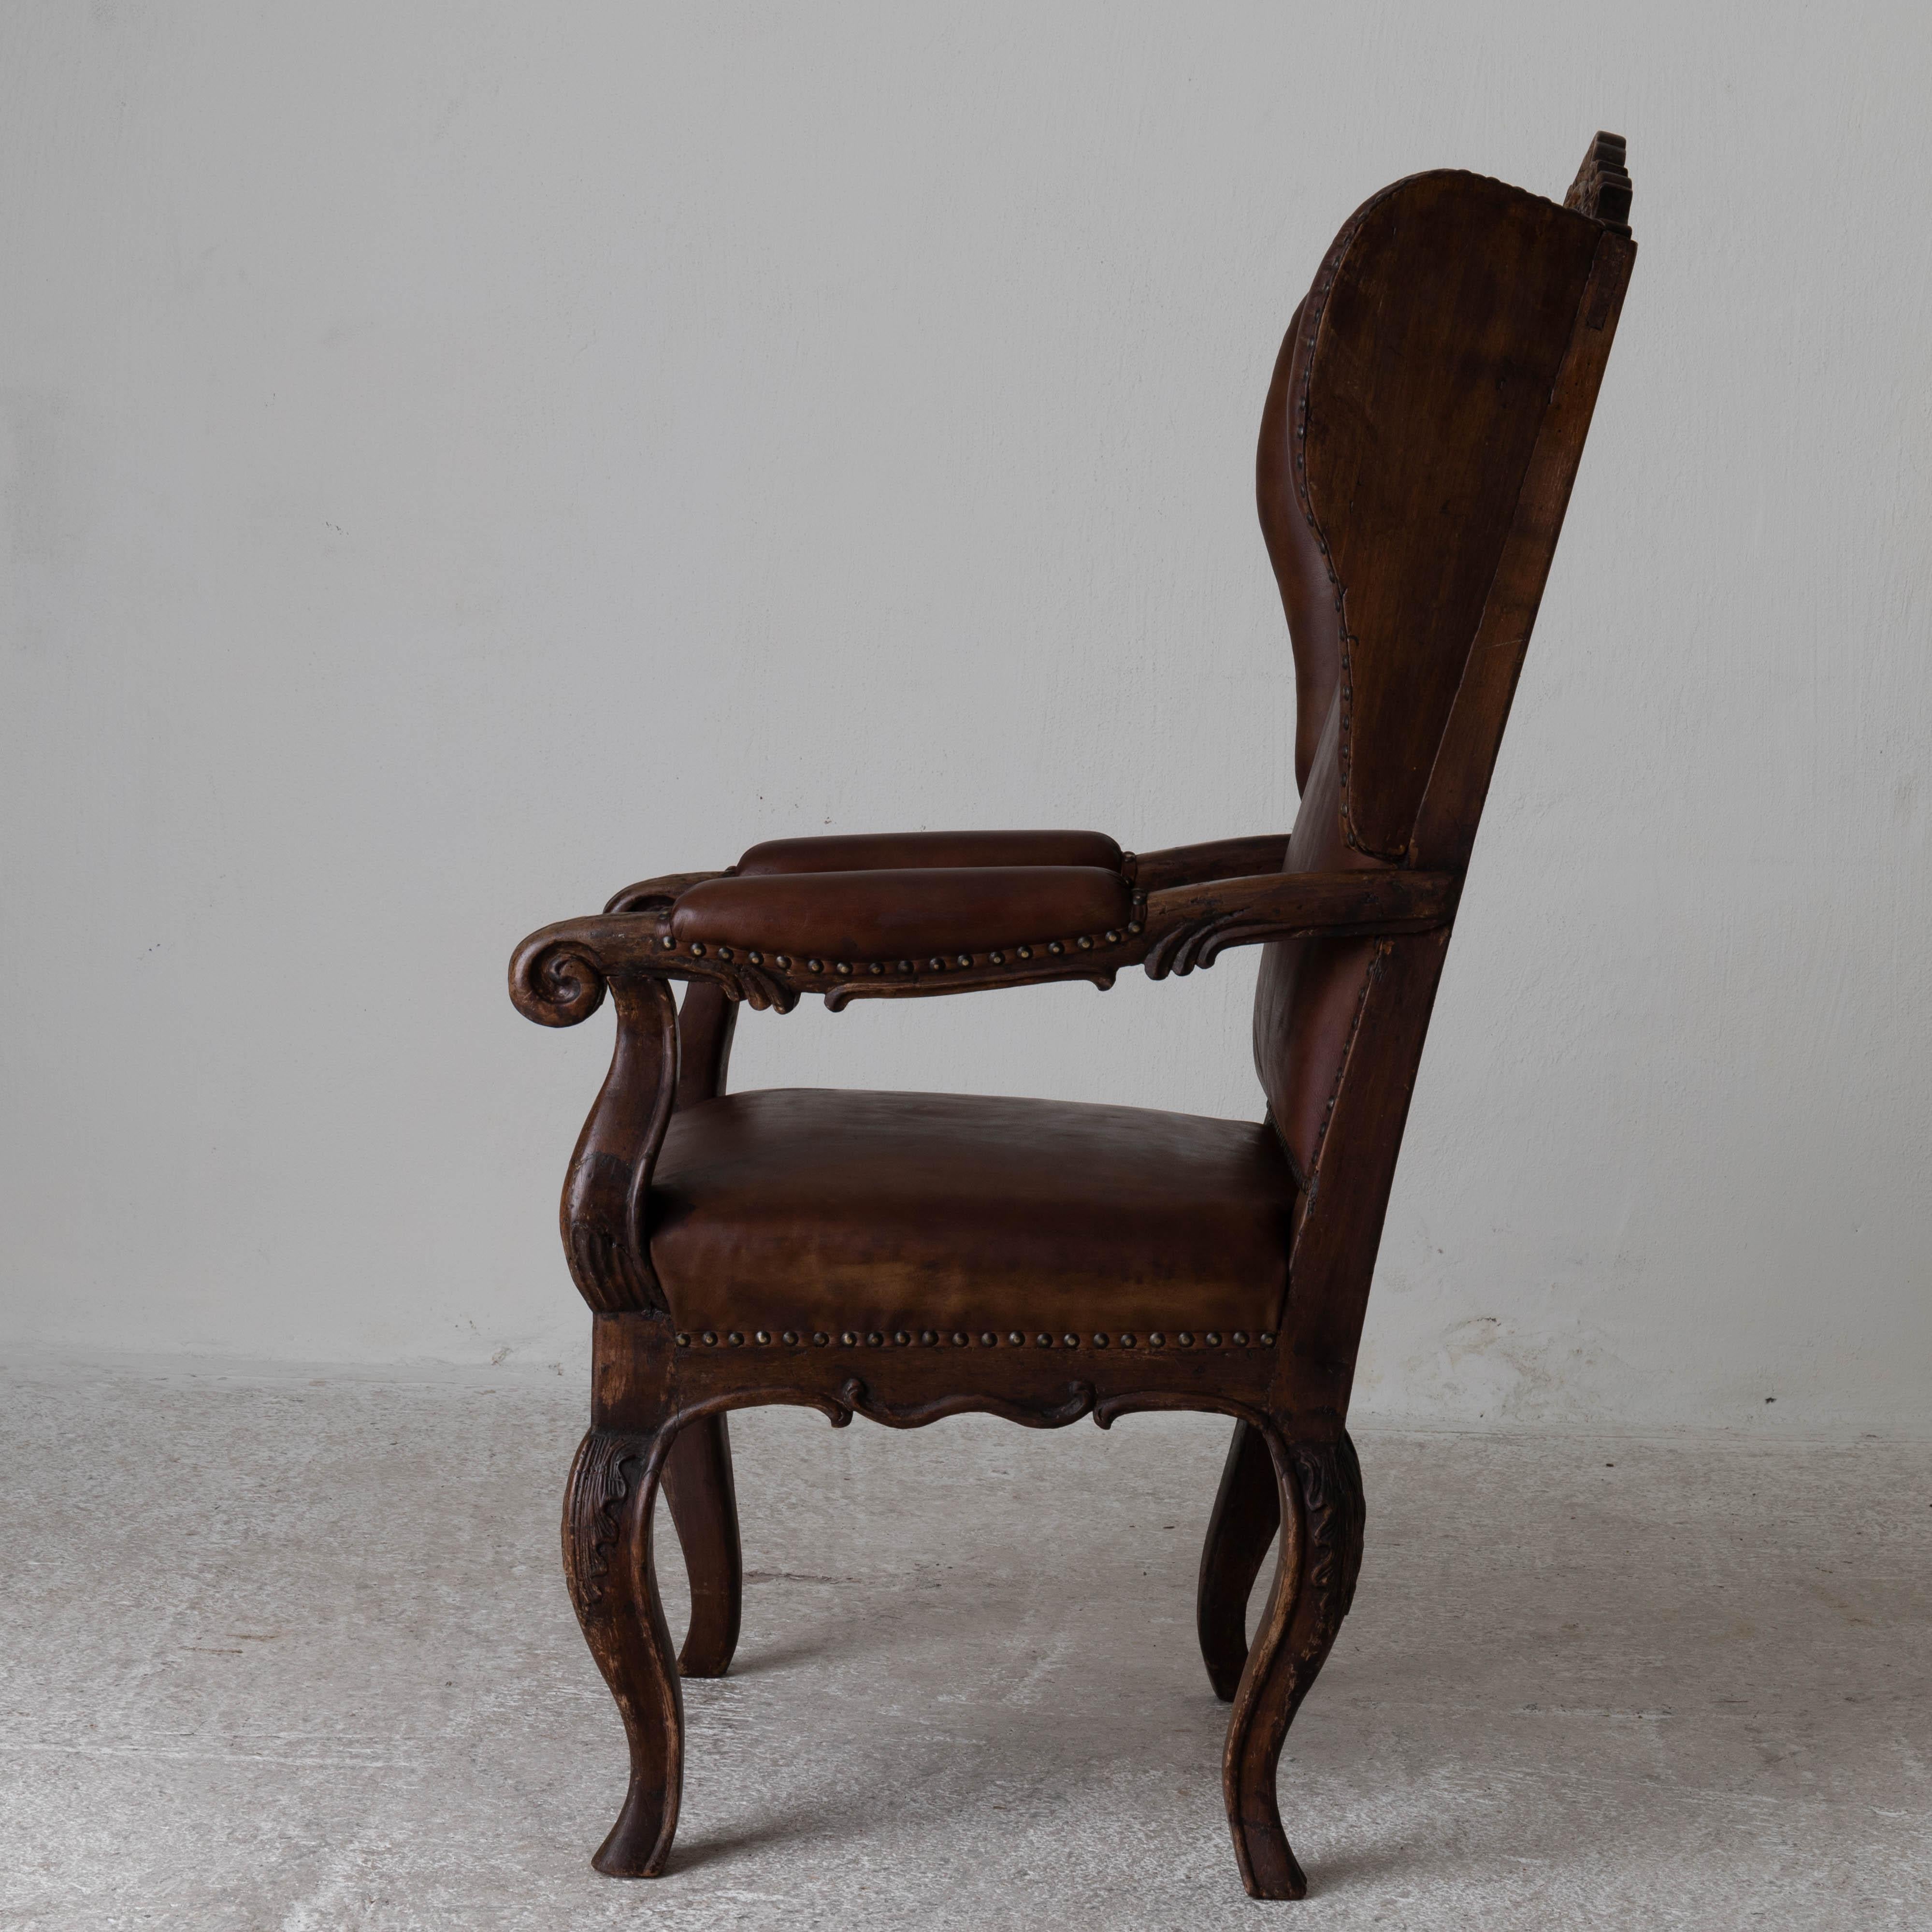 Chaise à oreilles suédoise Période Rococo 1750-1775 Cuir brun Suède. Une exquise chaise à oreilles fabriquée pendant la période rococo en Suède. Finition originale et revêtement en cuir marron ciré. 

 